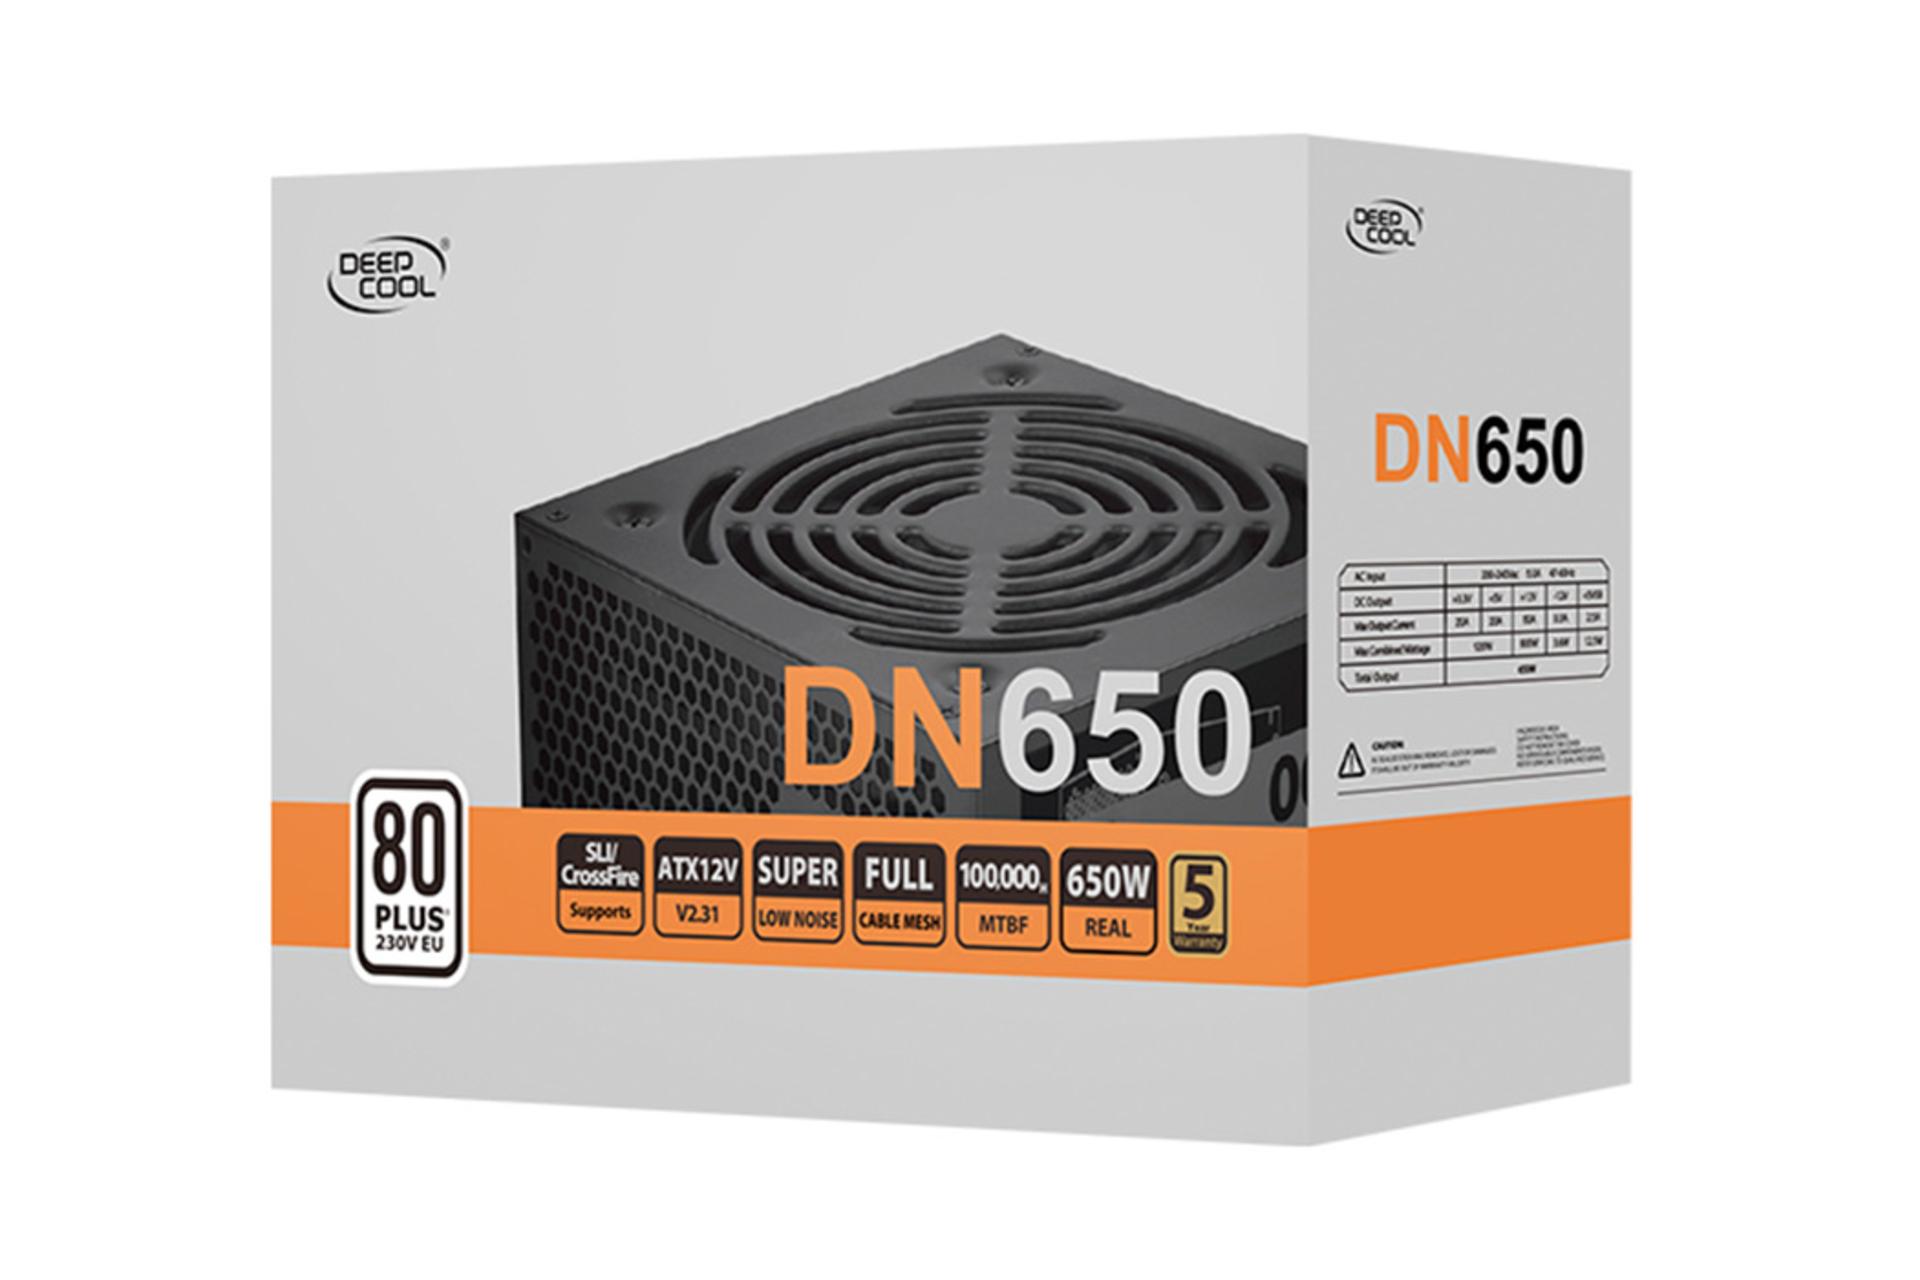 پاور کامپیوتر دیپ کول DN650 با توان 650 وات بسته بندی